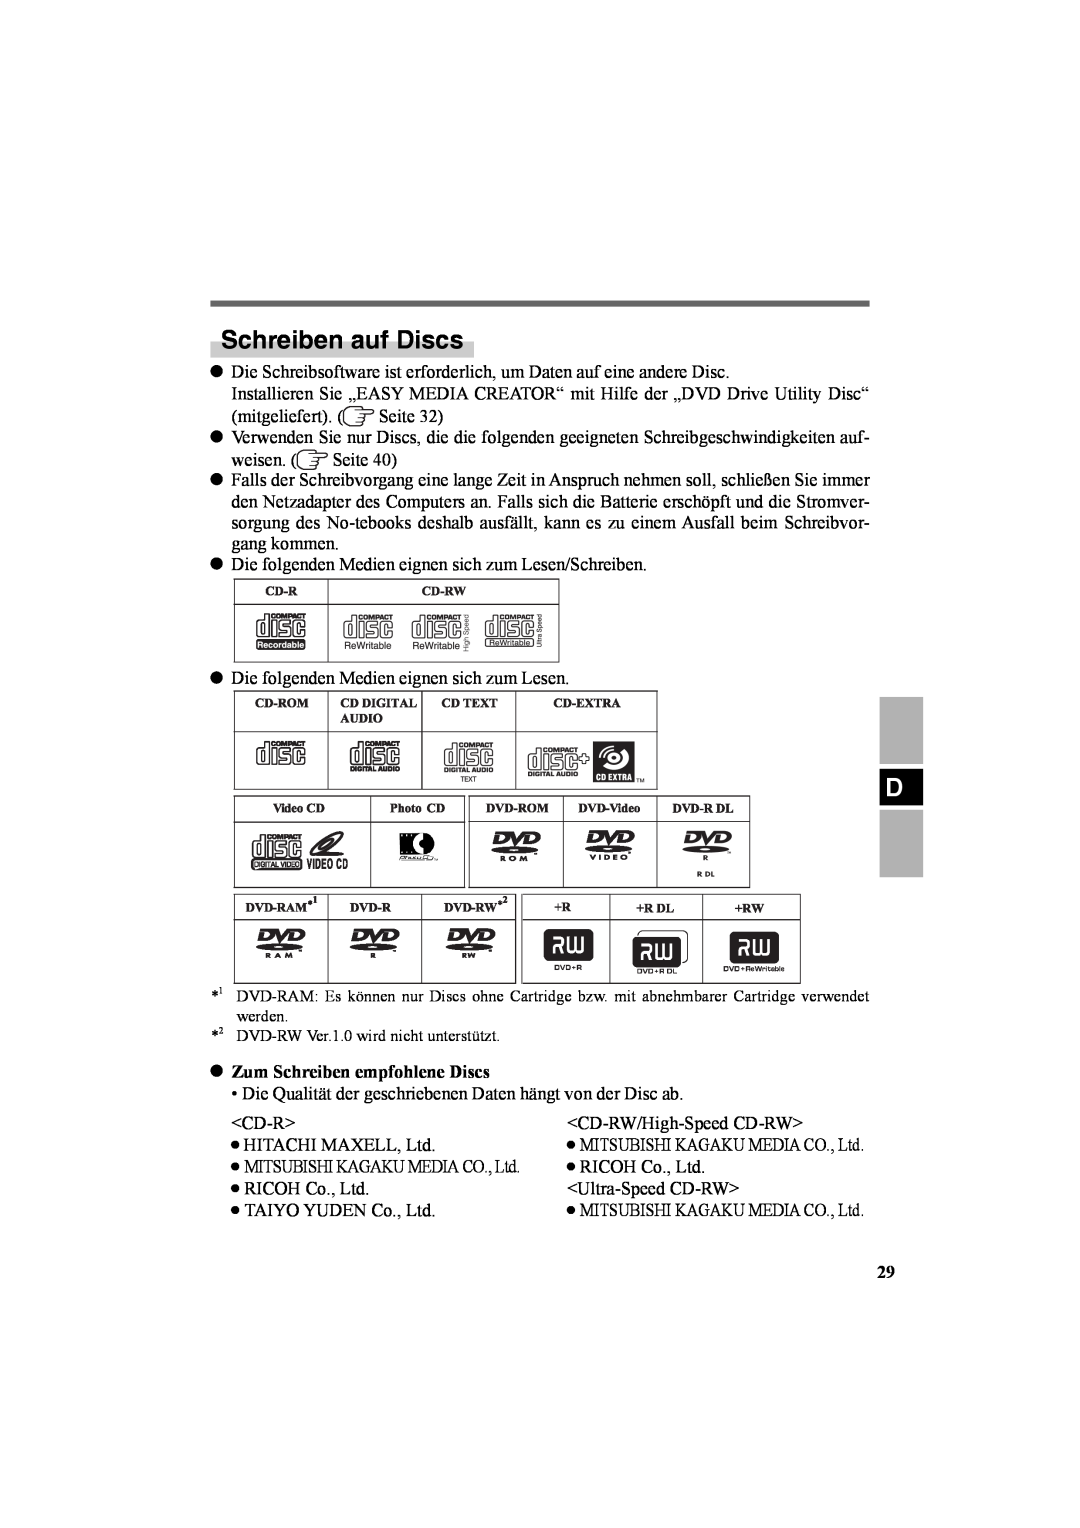 Panasonic CF-VDR301U specifications Schreiben auf Discs, Zum Schreiben empfohlene Discs 